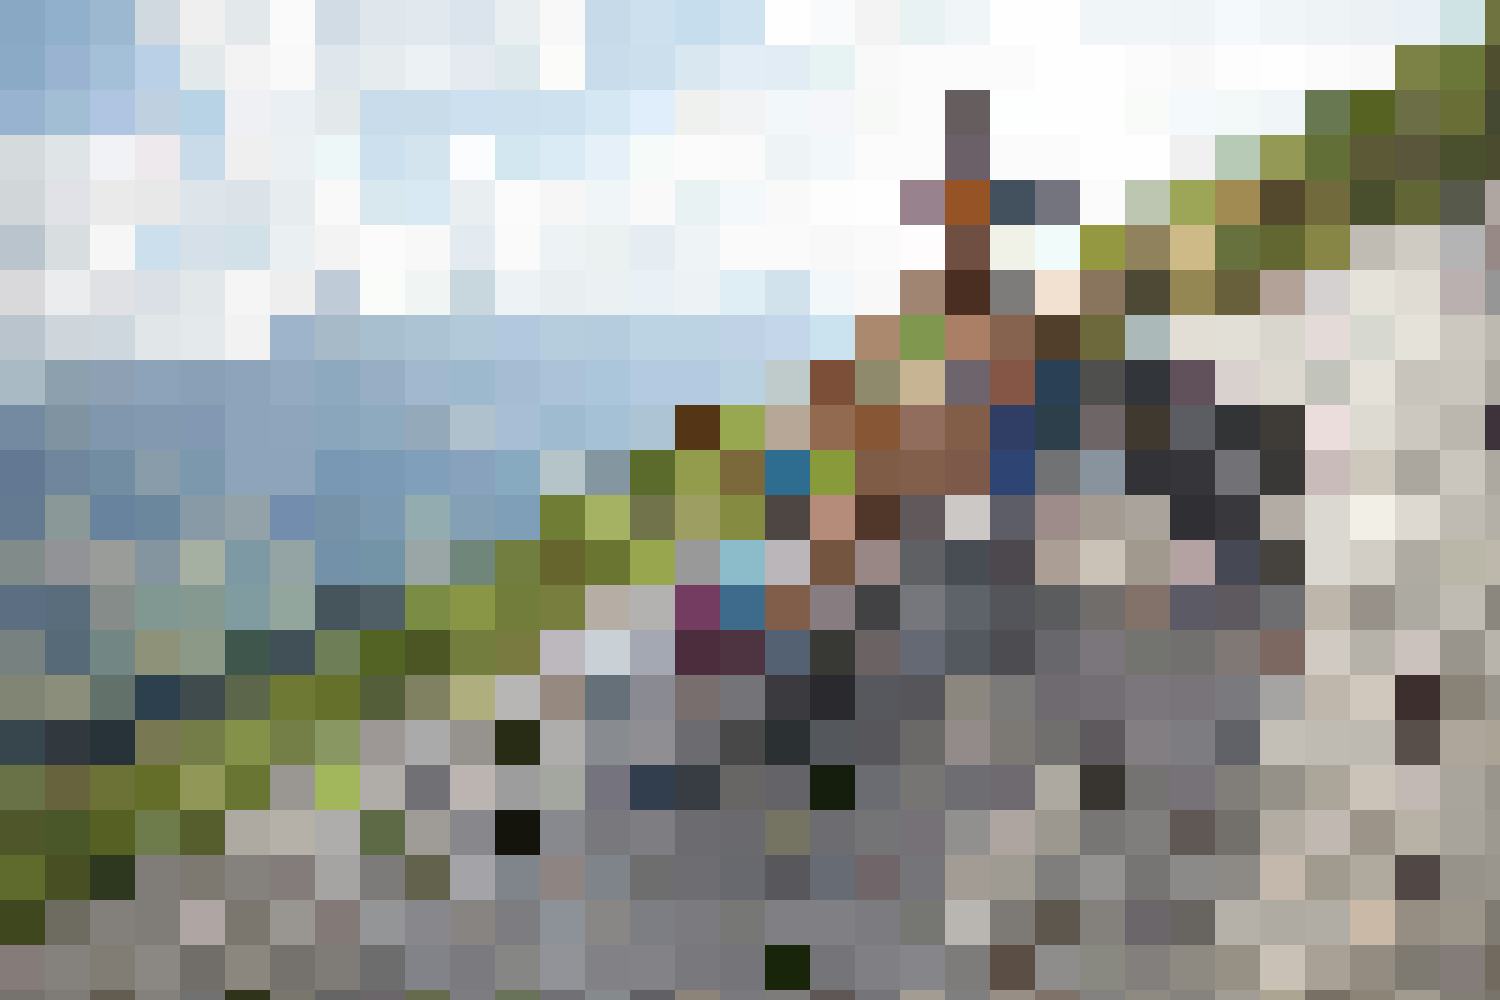 Die Marbachegg bietet für jeden das richtige Programm: Mit den Marbachegg-Carts kannst du den Berg runter düsen.